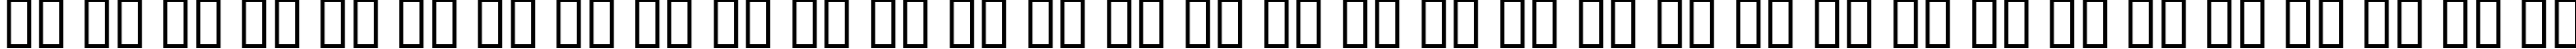 Пример написания русского алфавита шрифтом Rustler